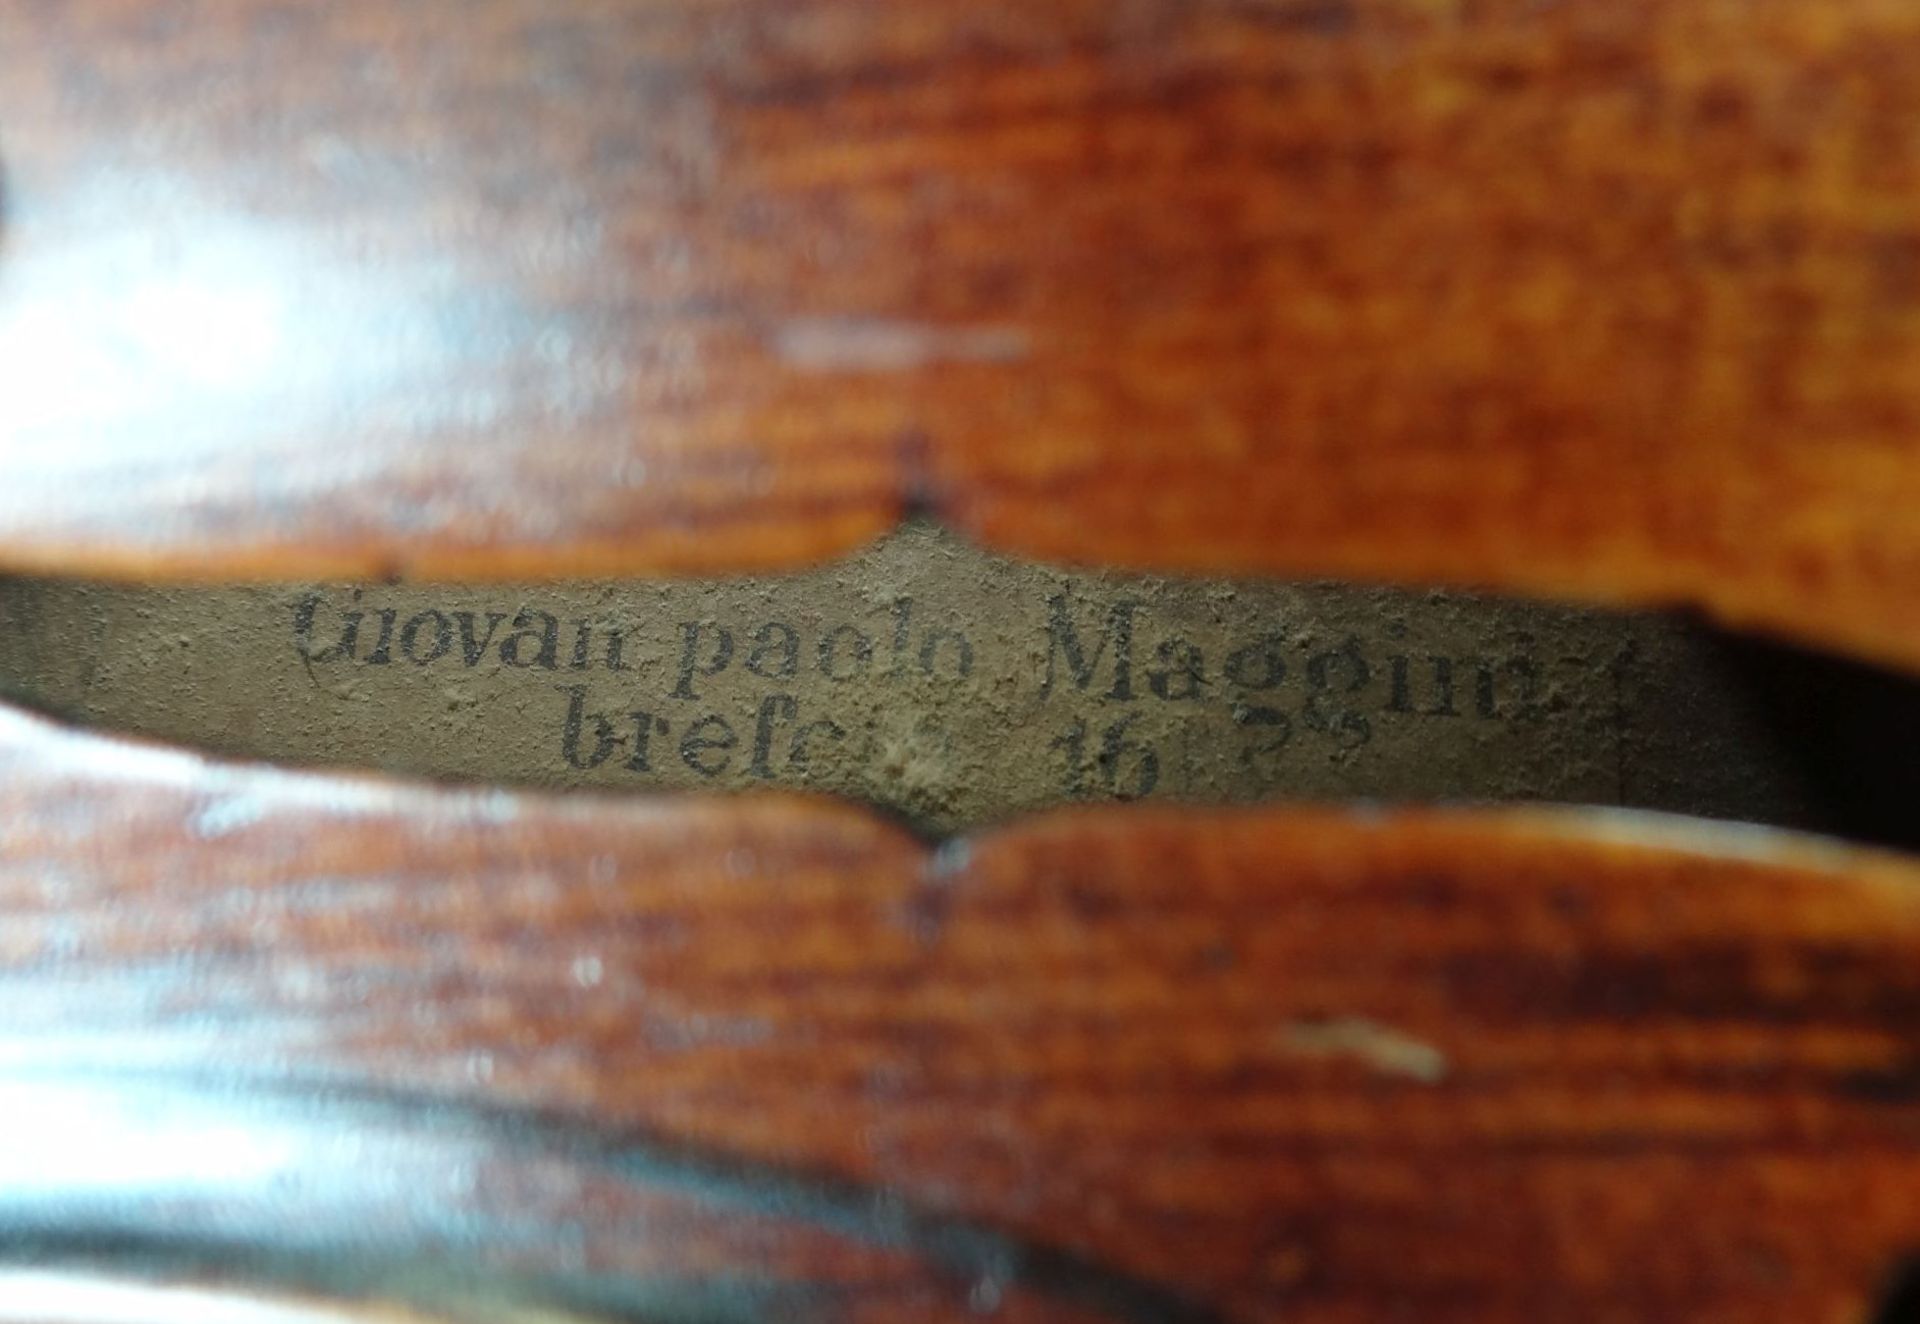 alte Geige im Koffer, innen Etikett "Ciovan Paolo Meggine", 19/20 Jhd?, L-62 cm, gut erhalten - Bild 10 aus 10